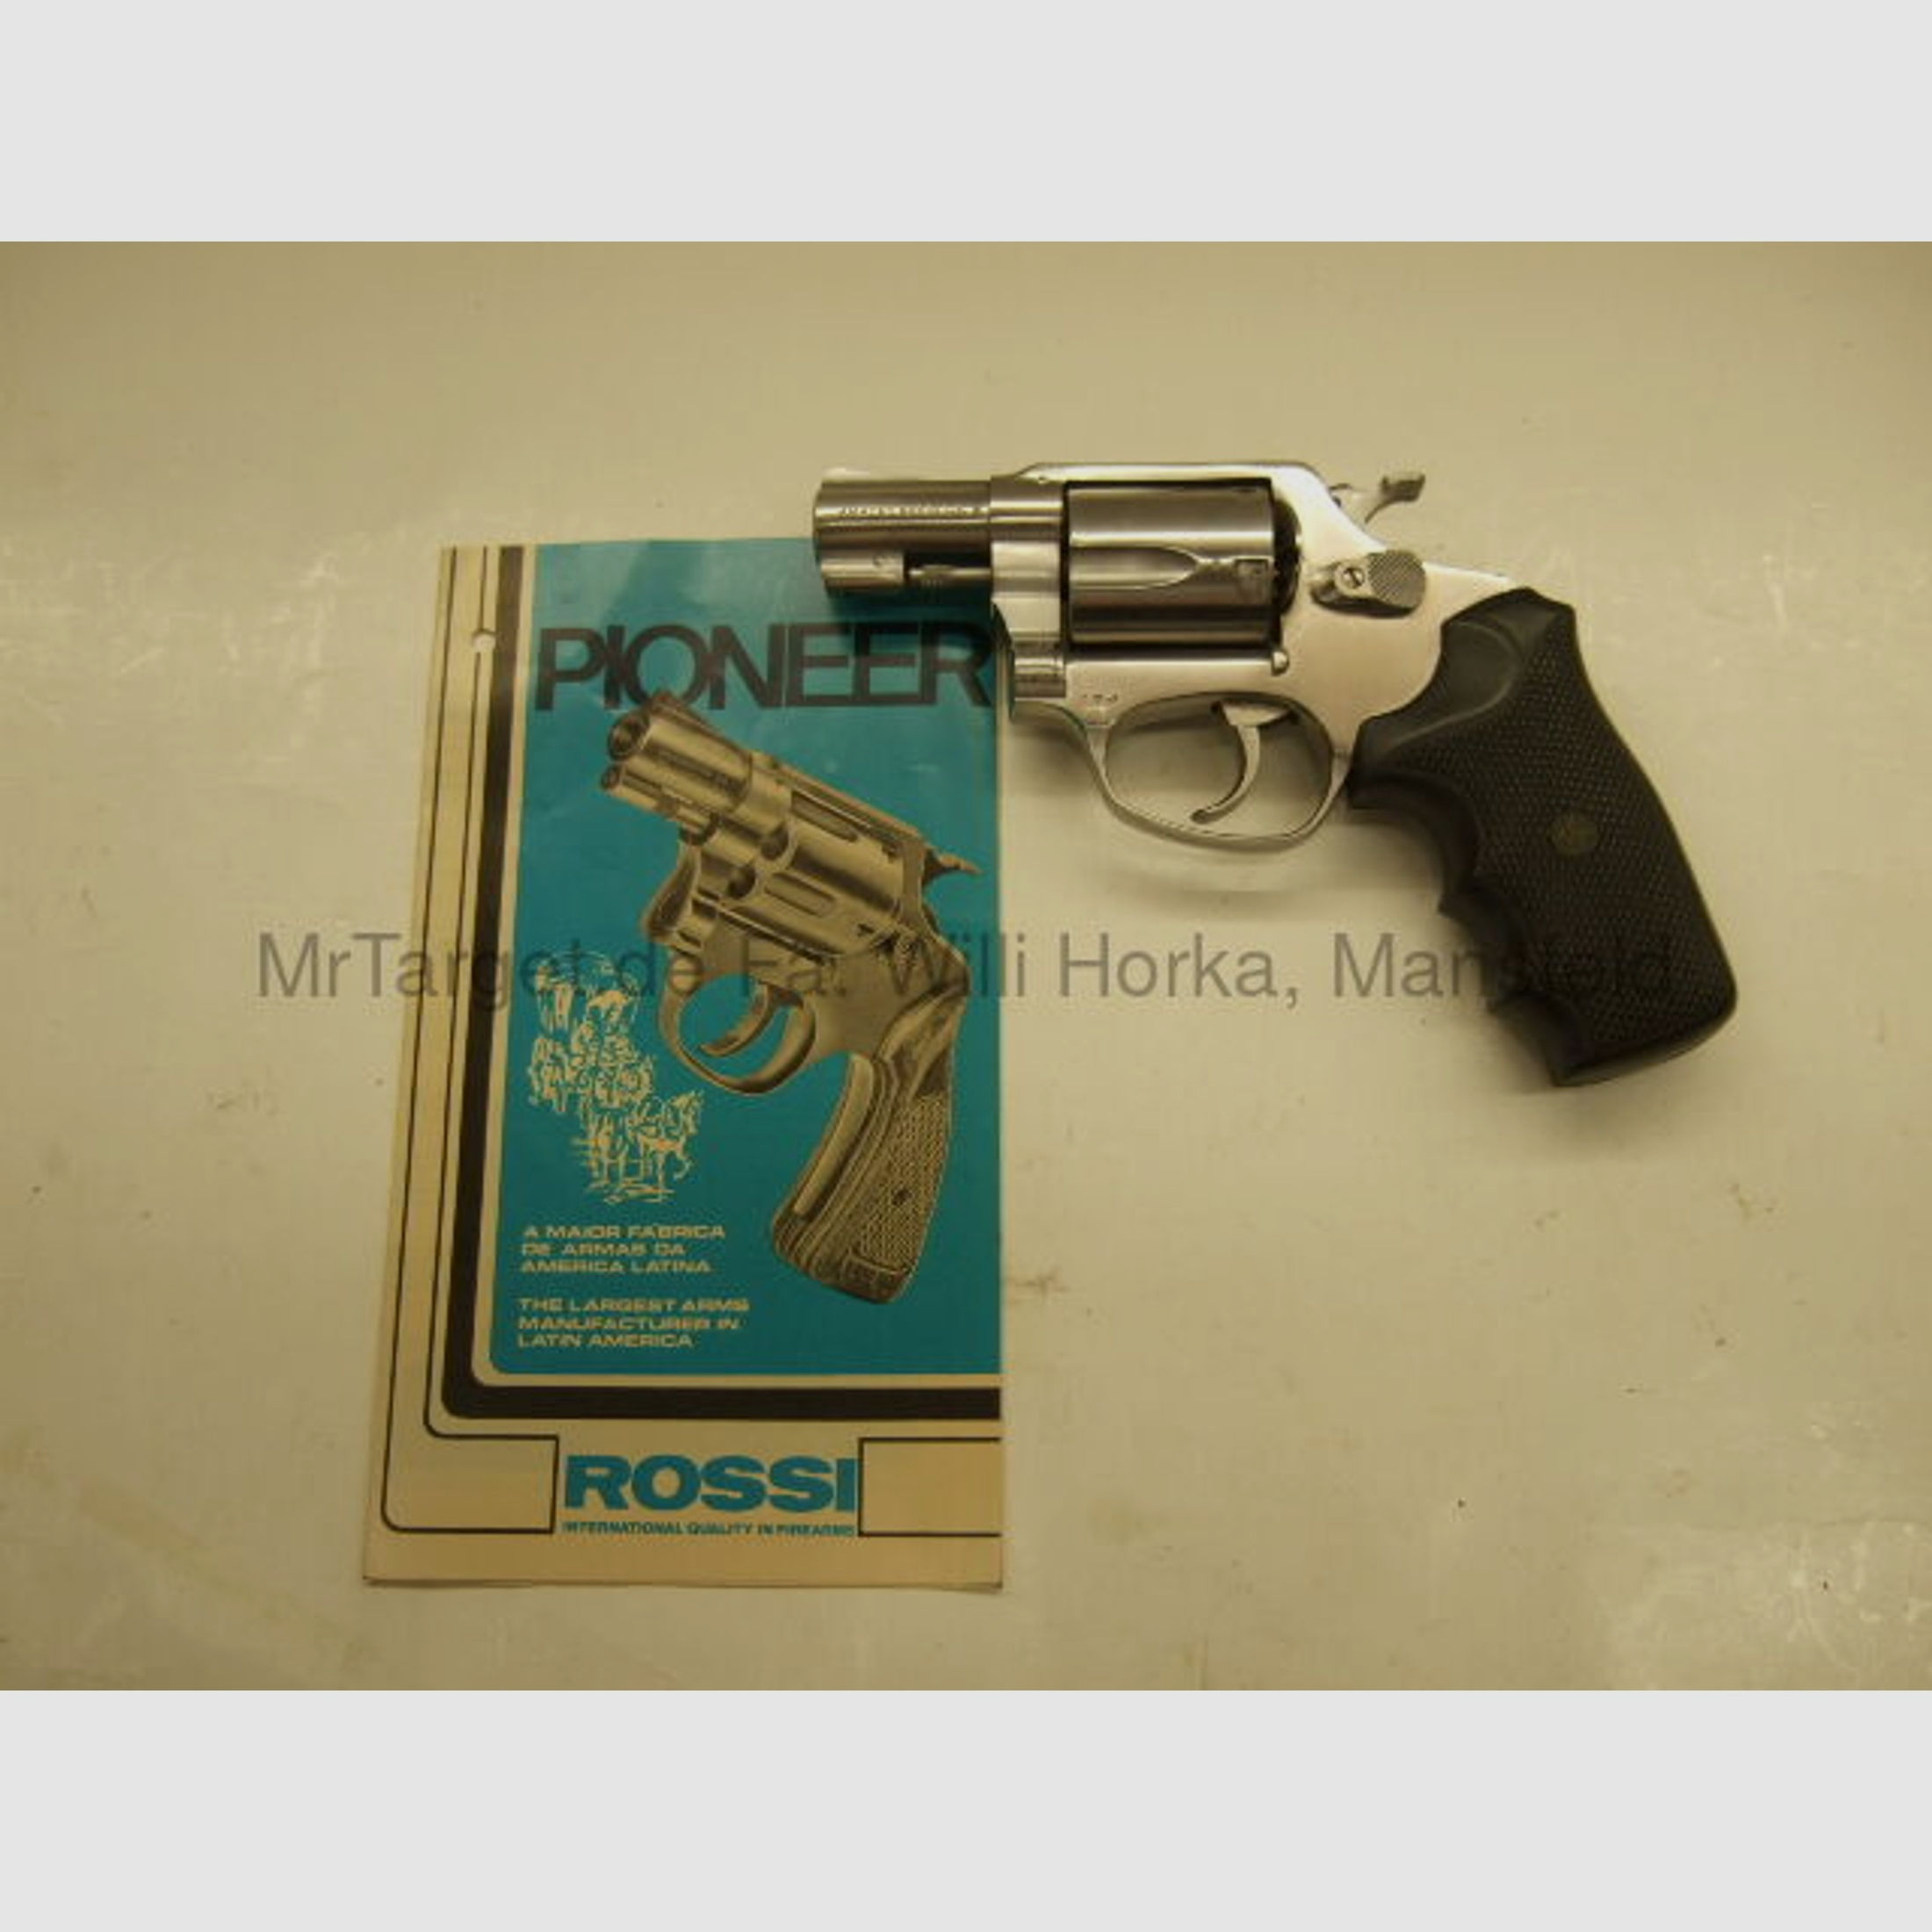 Rossi	 27 (Pioneer) * 5schüssig * Fangschußwaffe * stainless